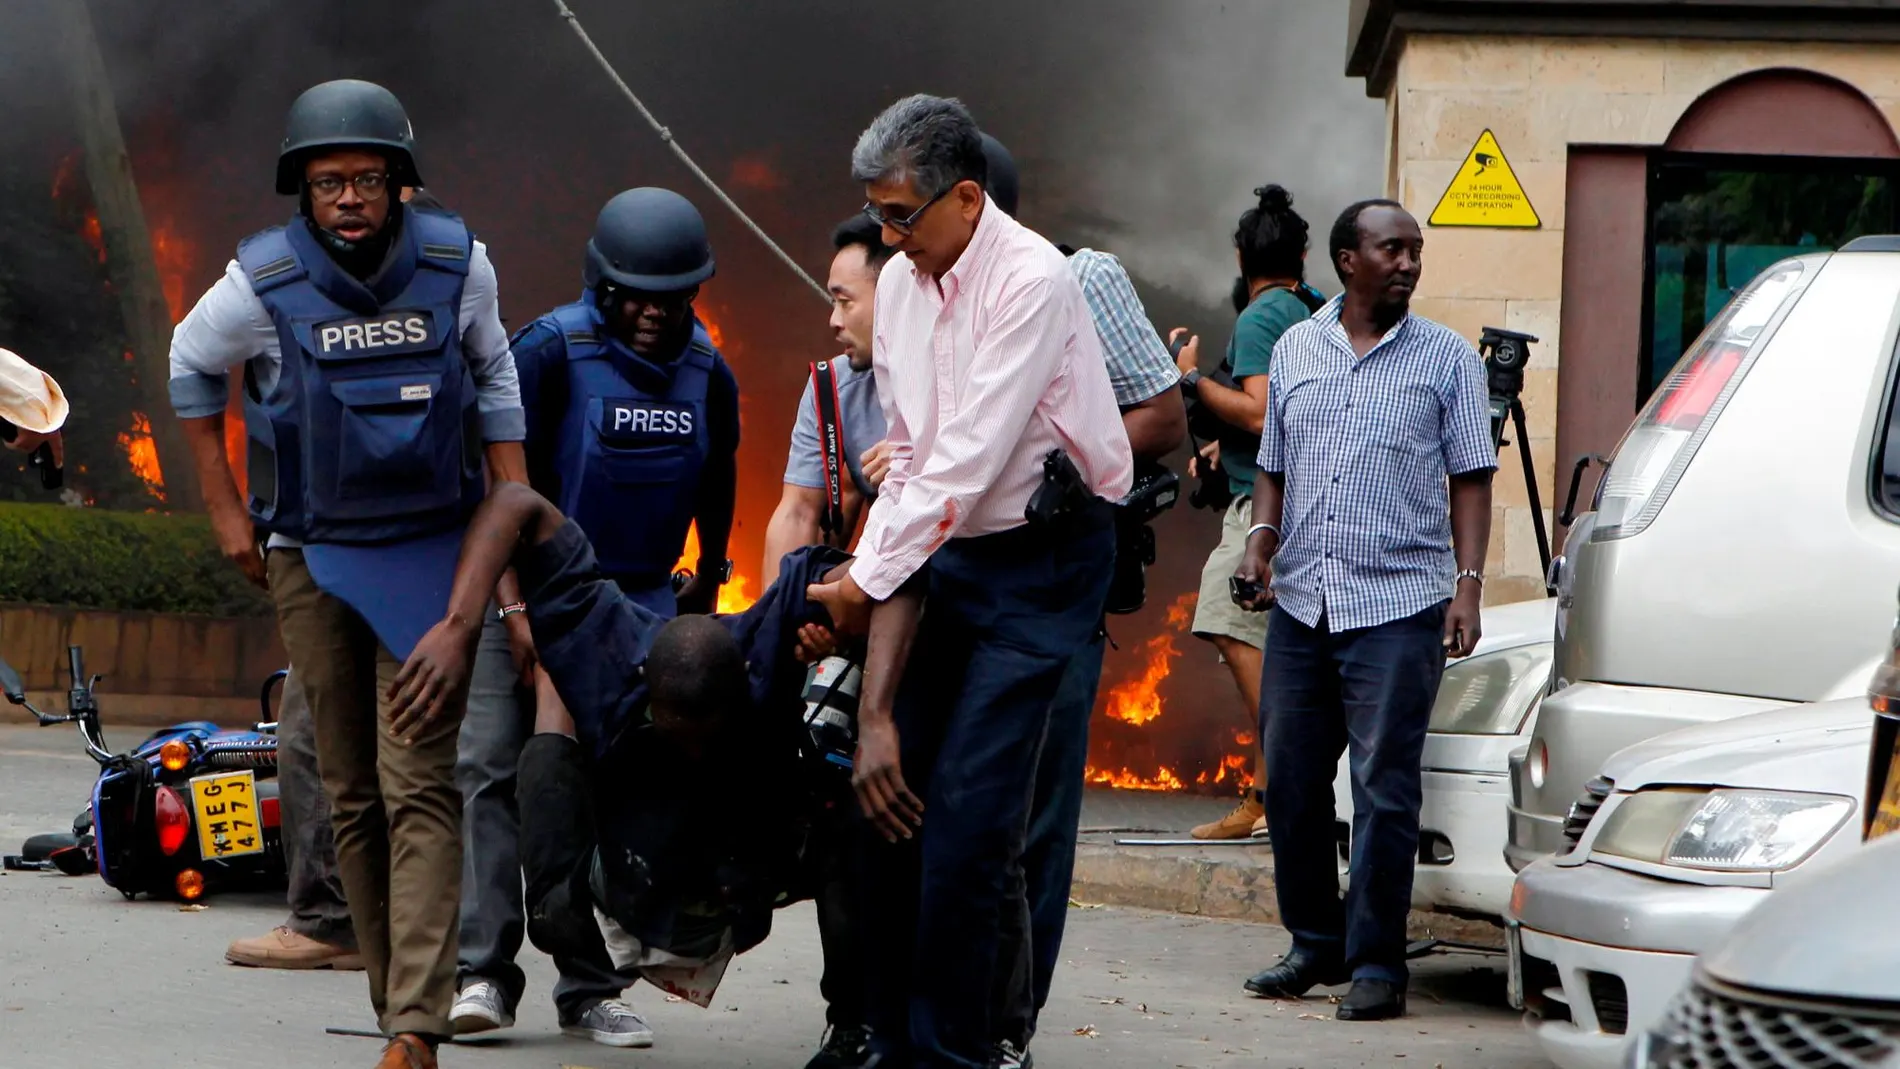 Rescatadores y periodistas evacuando a un hombre herido tras el atentado en Nairobi, Kenia, el pasado 15 de enero